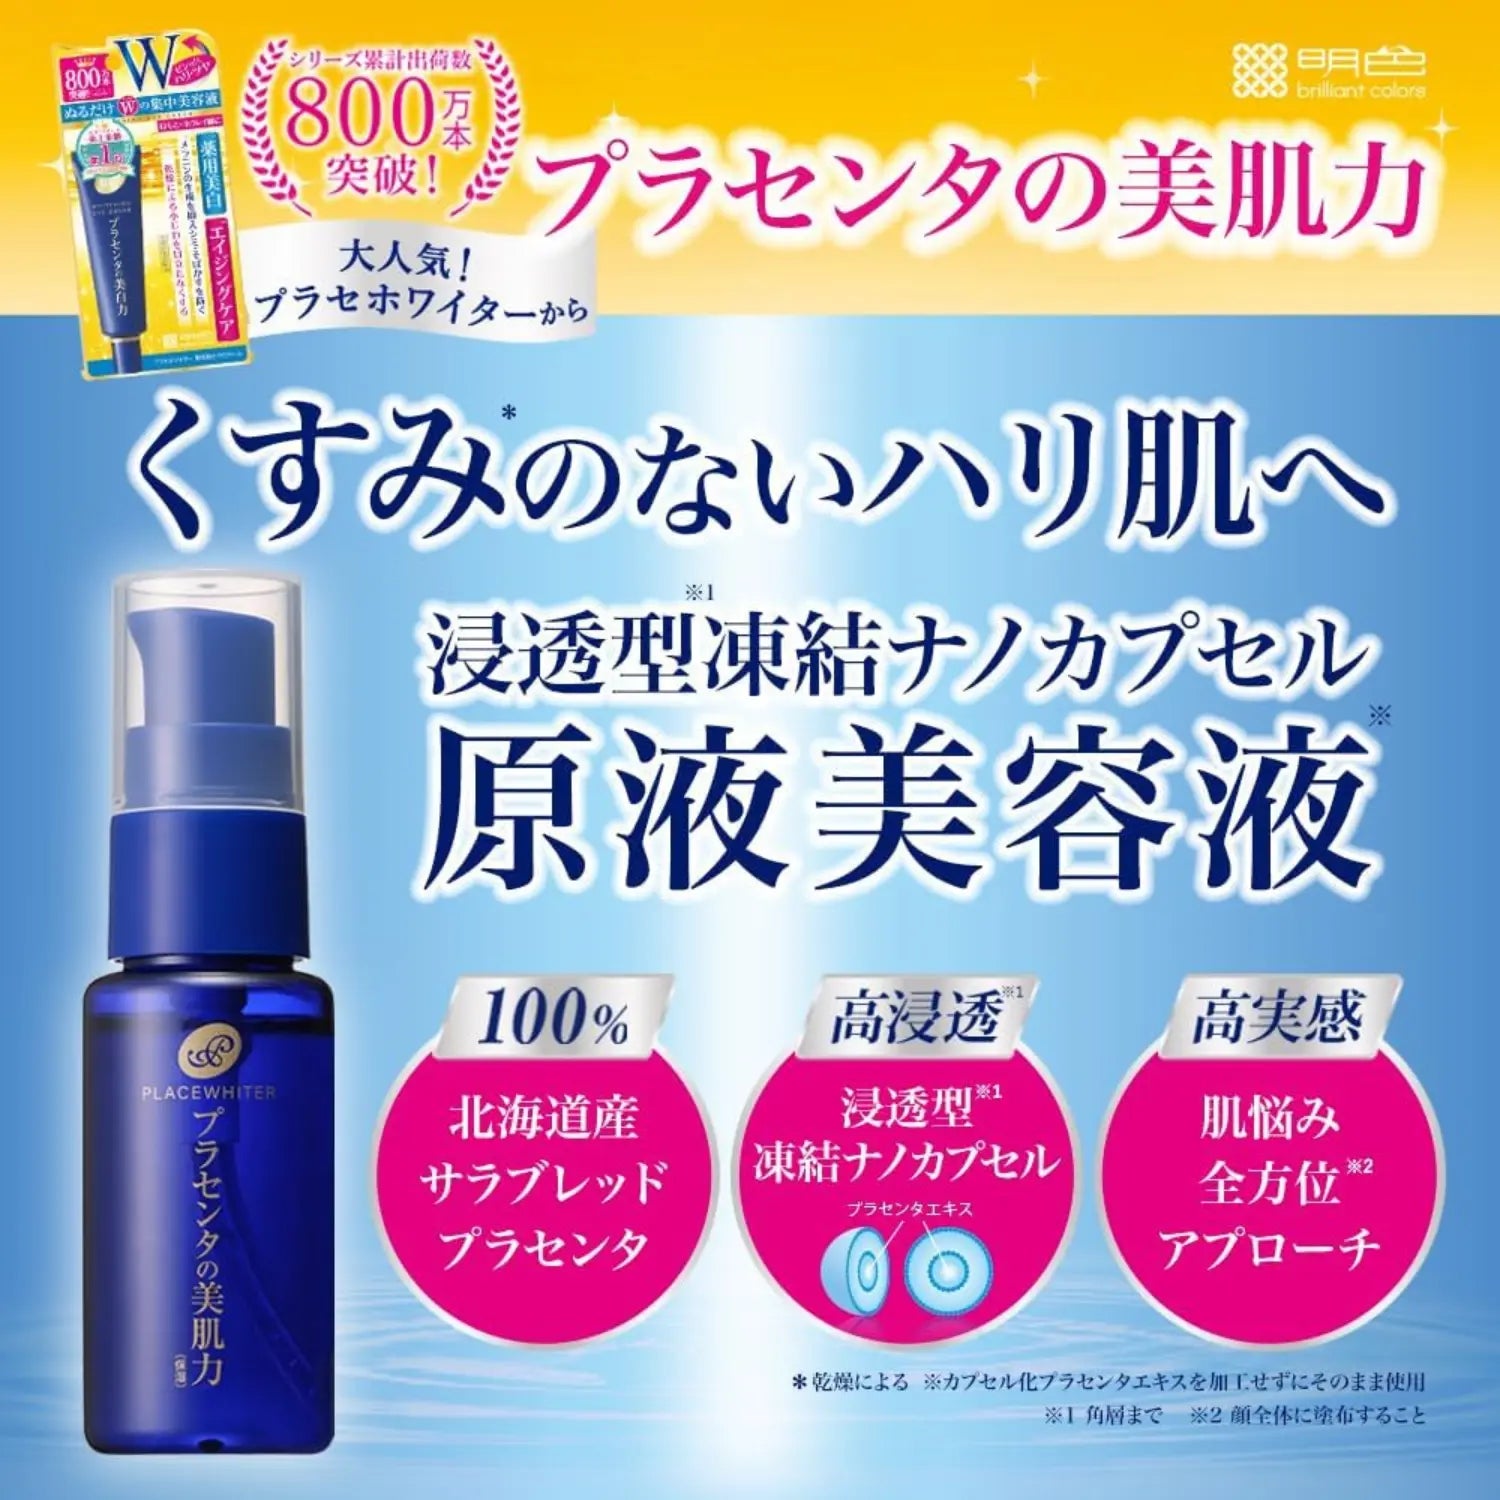 Meishoku Placenta Whitening Essence Serum 30ml - Buy Me Japan